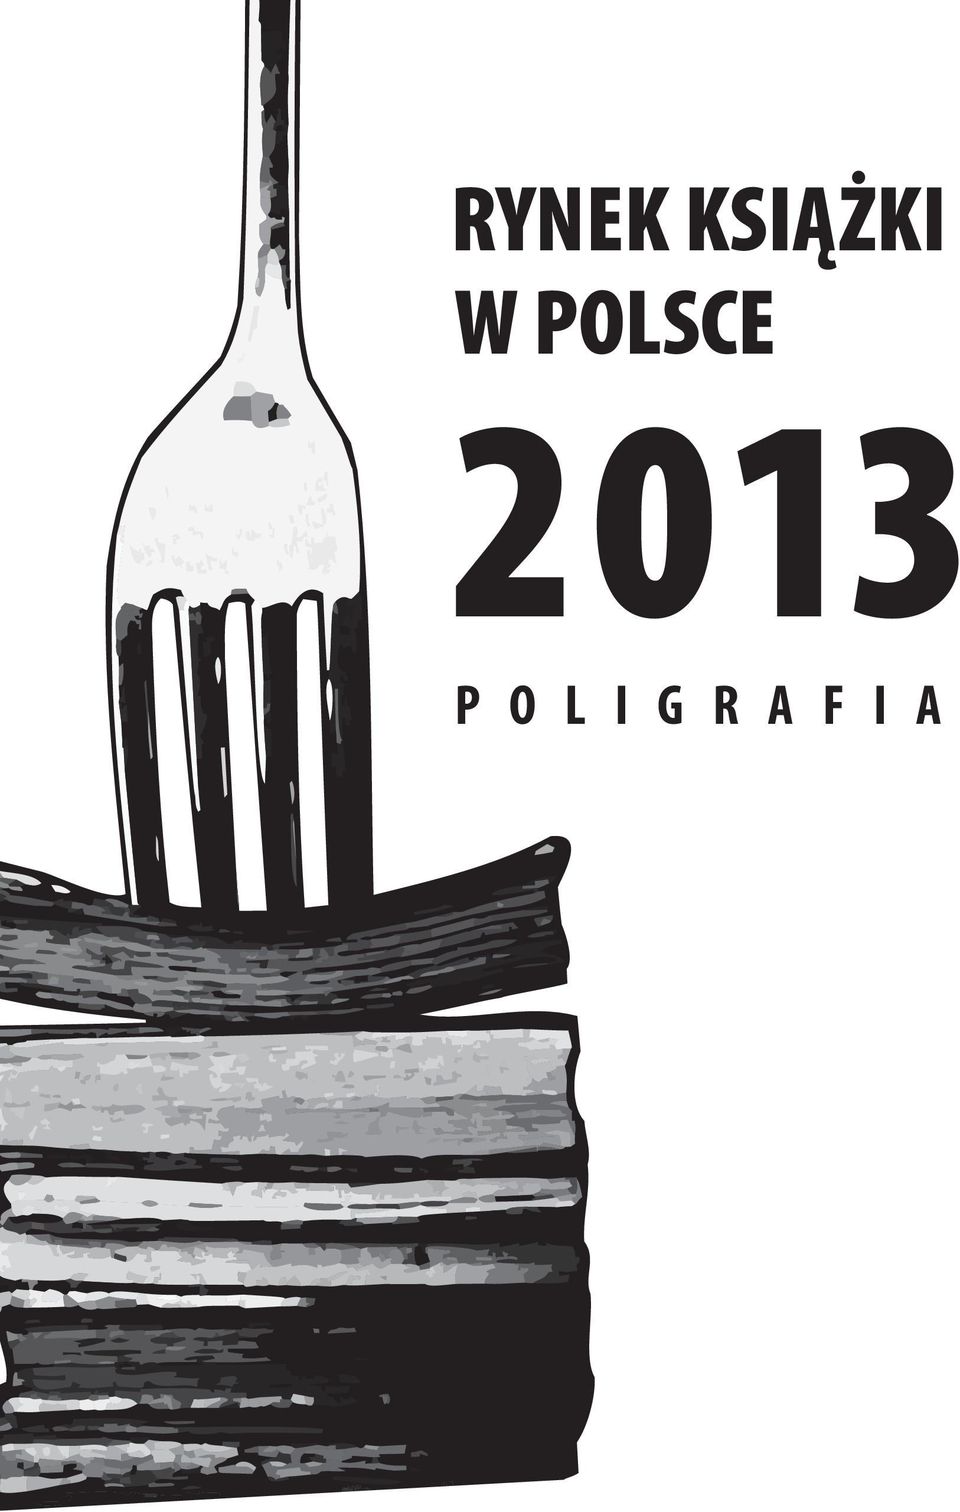 POLSCE 2013